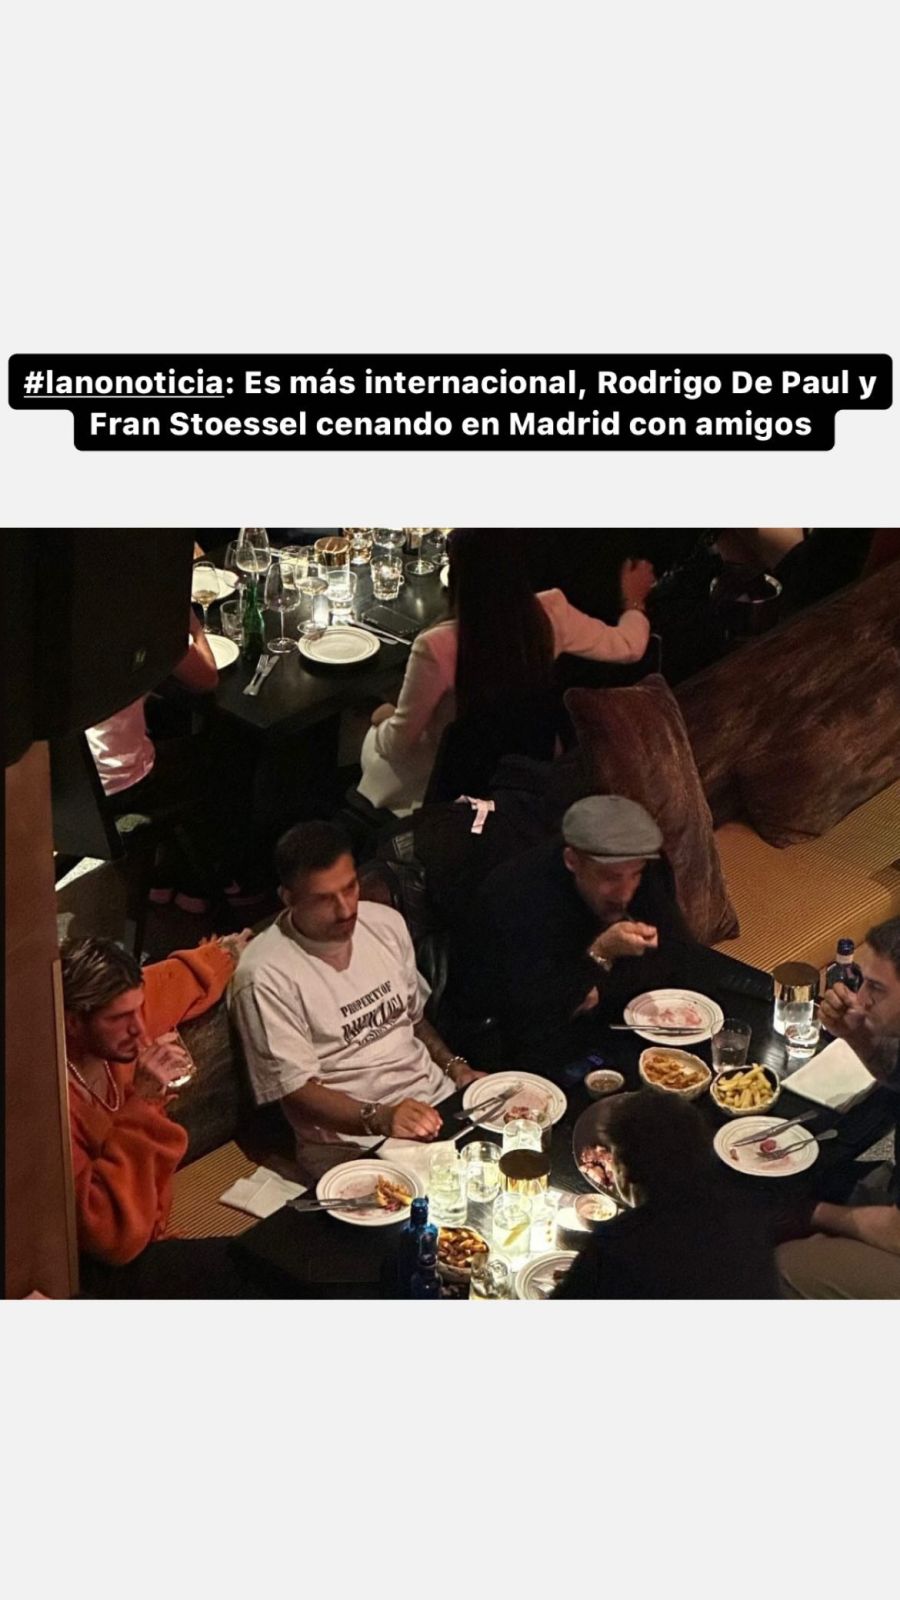 Rodrigo De Paul se encontró con Fran Stoessel